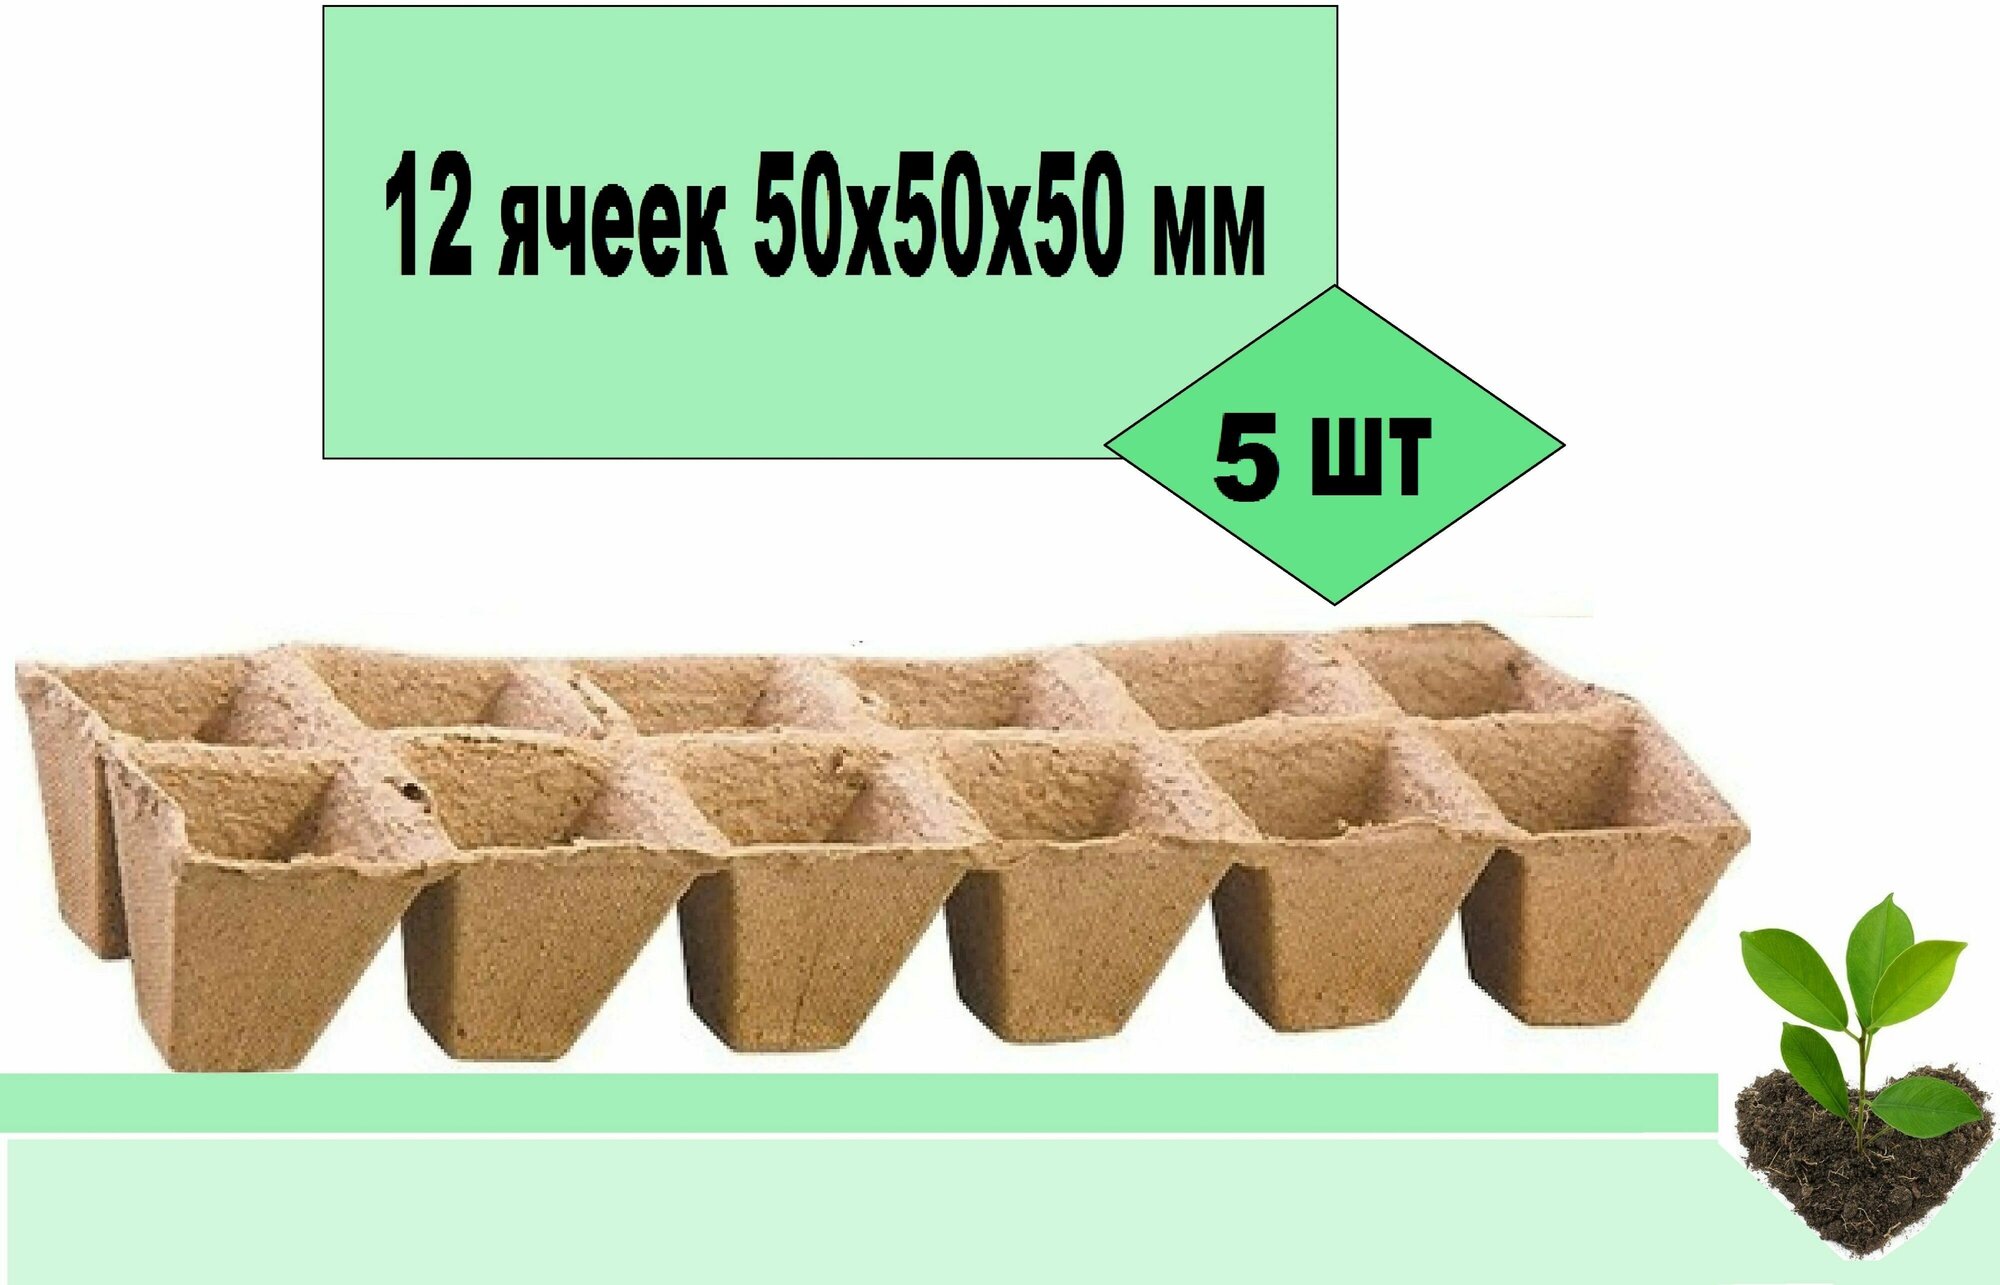 Блок торфяных горшков 5 кассет по 12 ячеек 50х50х50 мм. Емкости удобны и практичны сохраняют структуру при поливе. Растворяясь горшочек постепенно превращается в удобрение для рассады